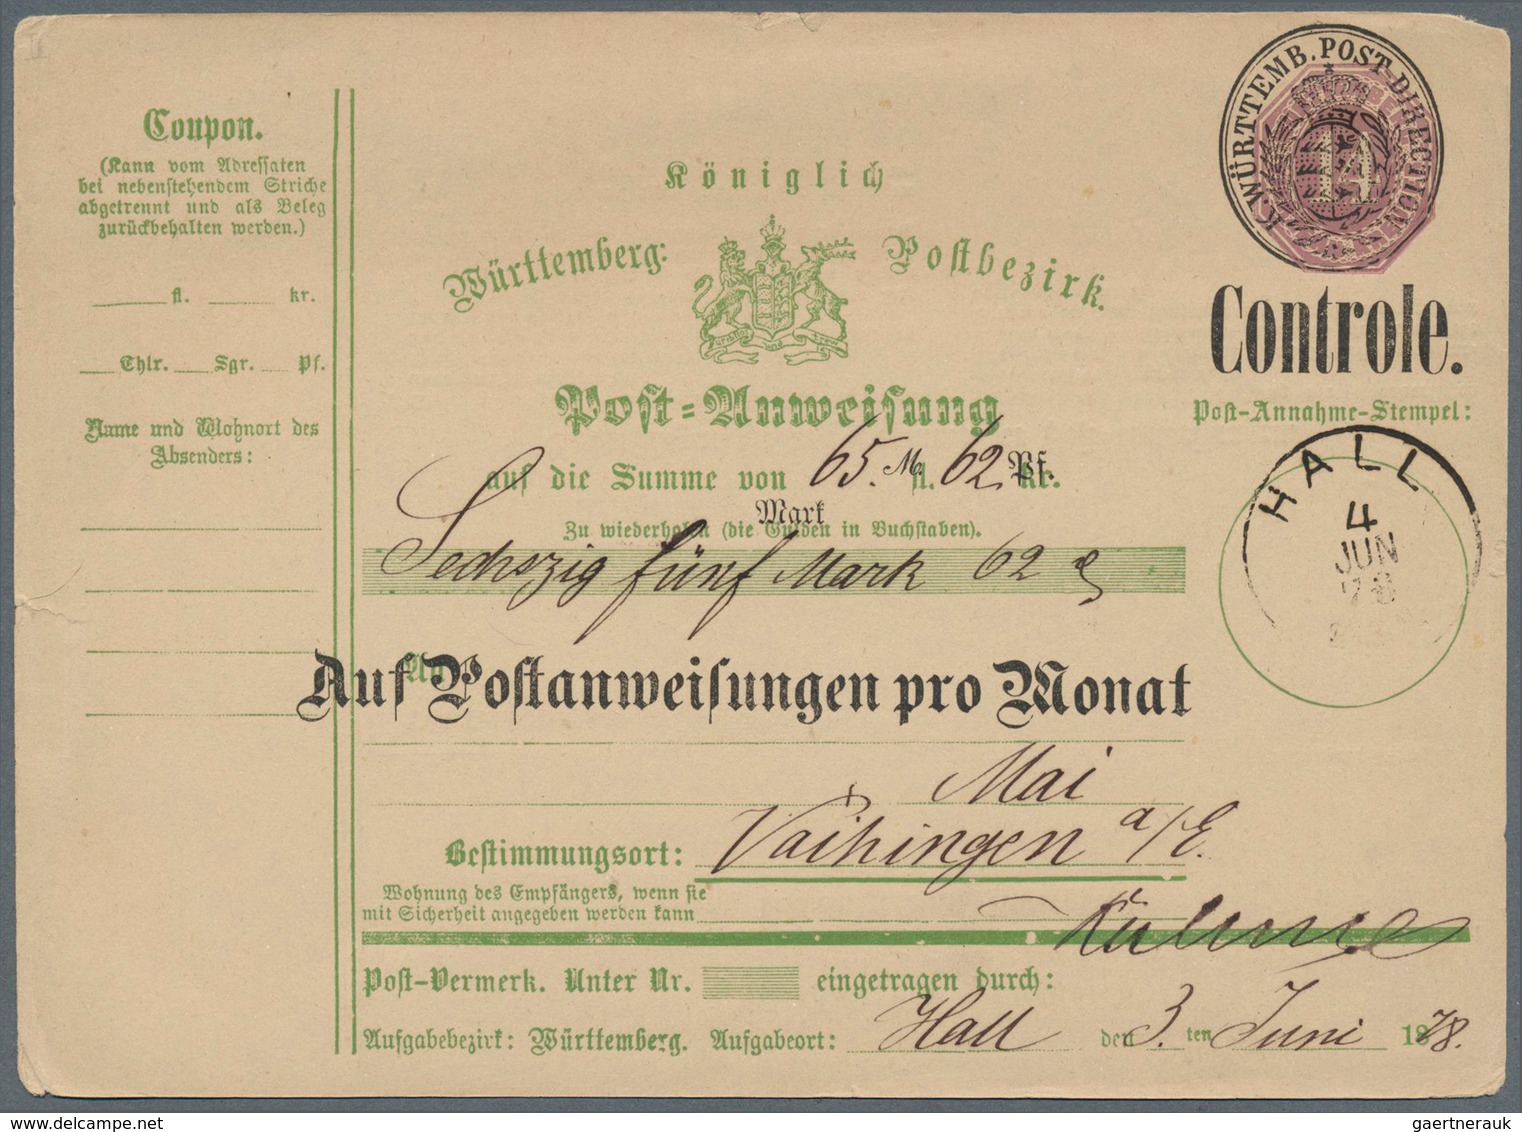 31368 Württemberg - Ganzsachen: 1865/1920 ca., interessante Slg. mit ca.160 gebrauchten Ganzsachen, beginn